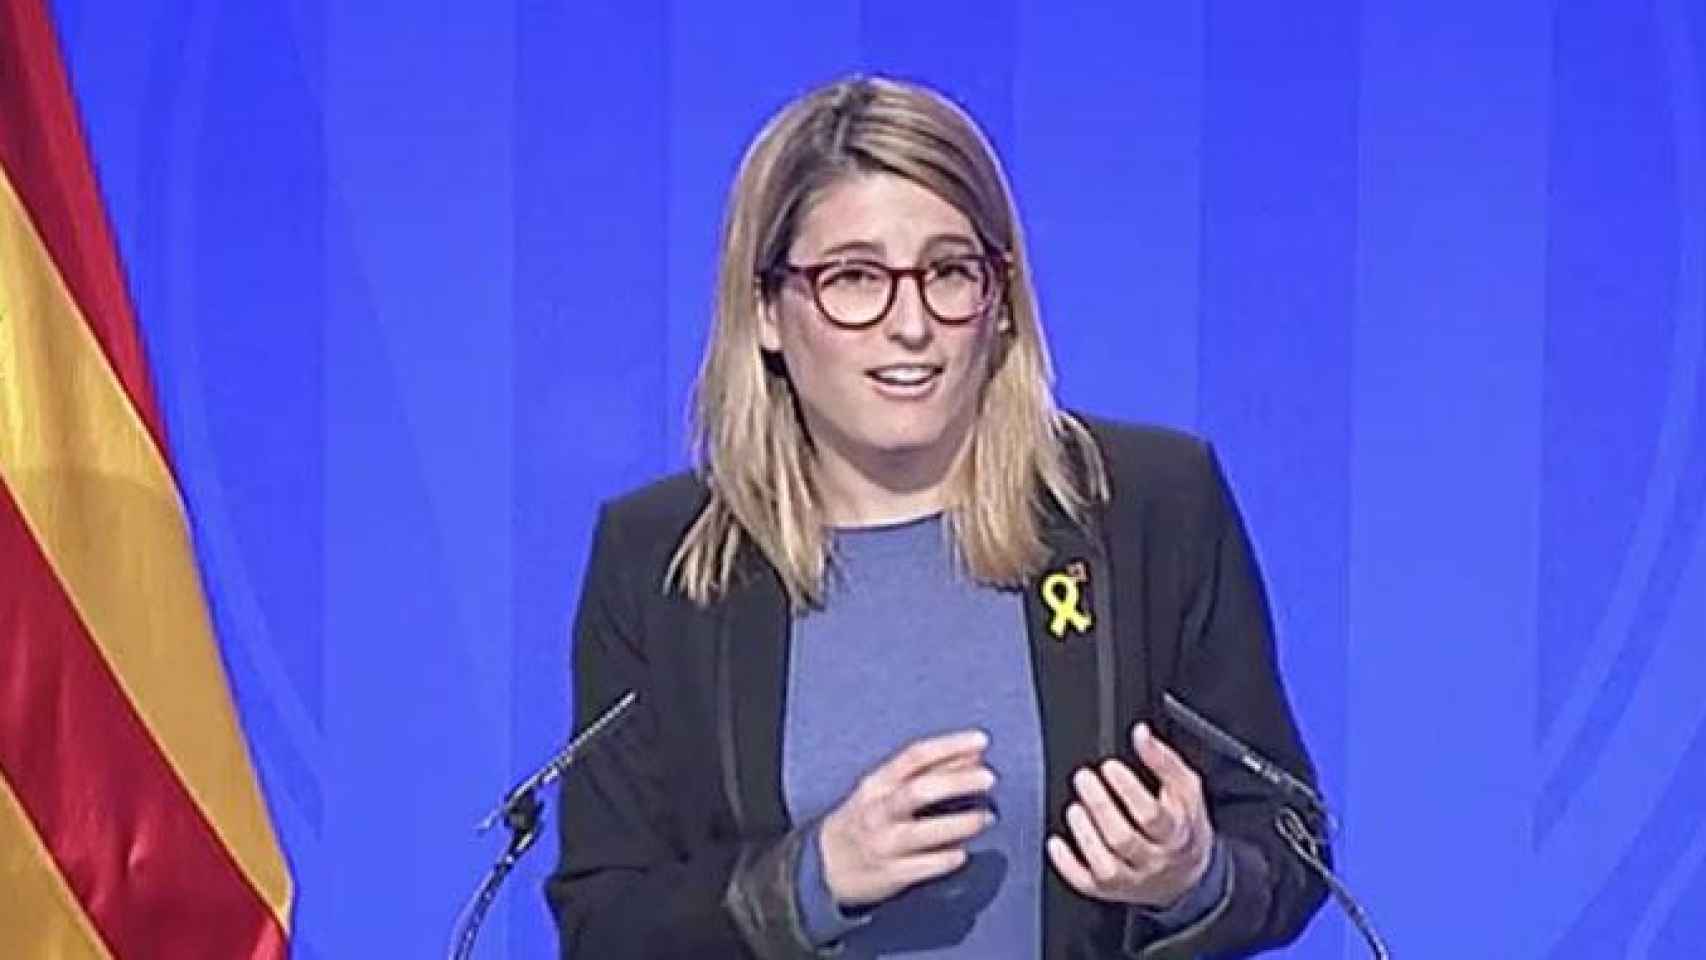 La portavoz de la Generalitat, Elsa Artadi, critica las elecciones / EUROPA PRESS